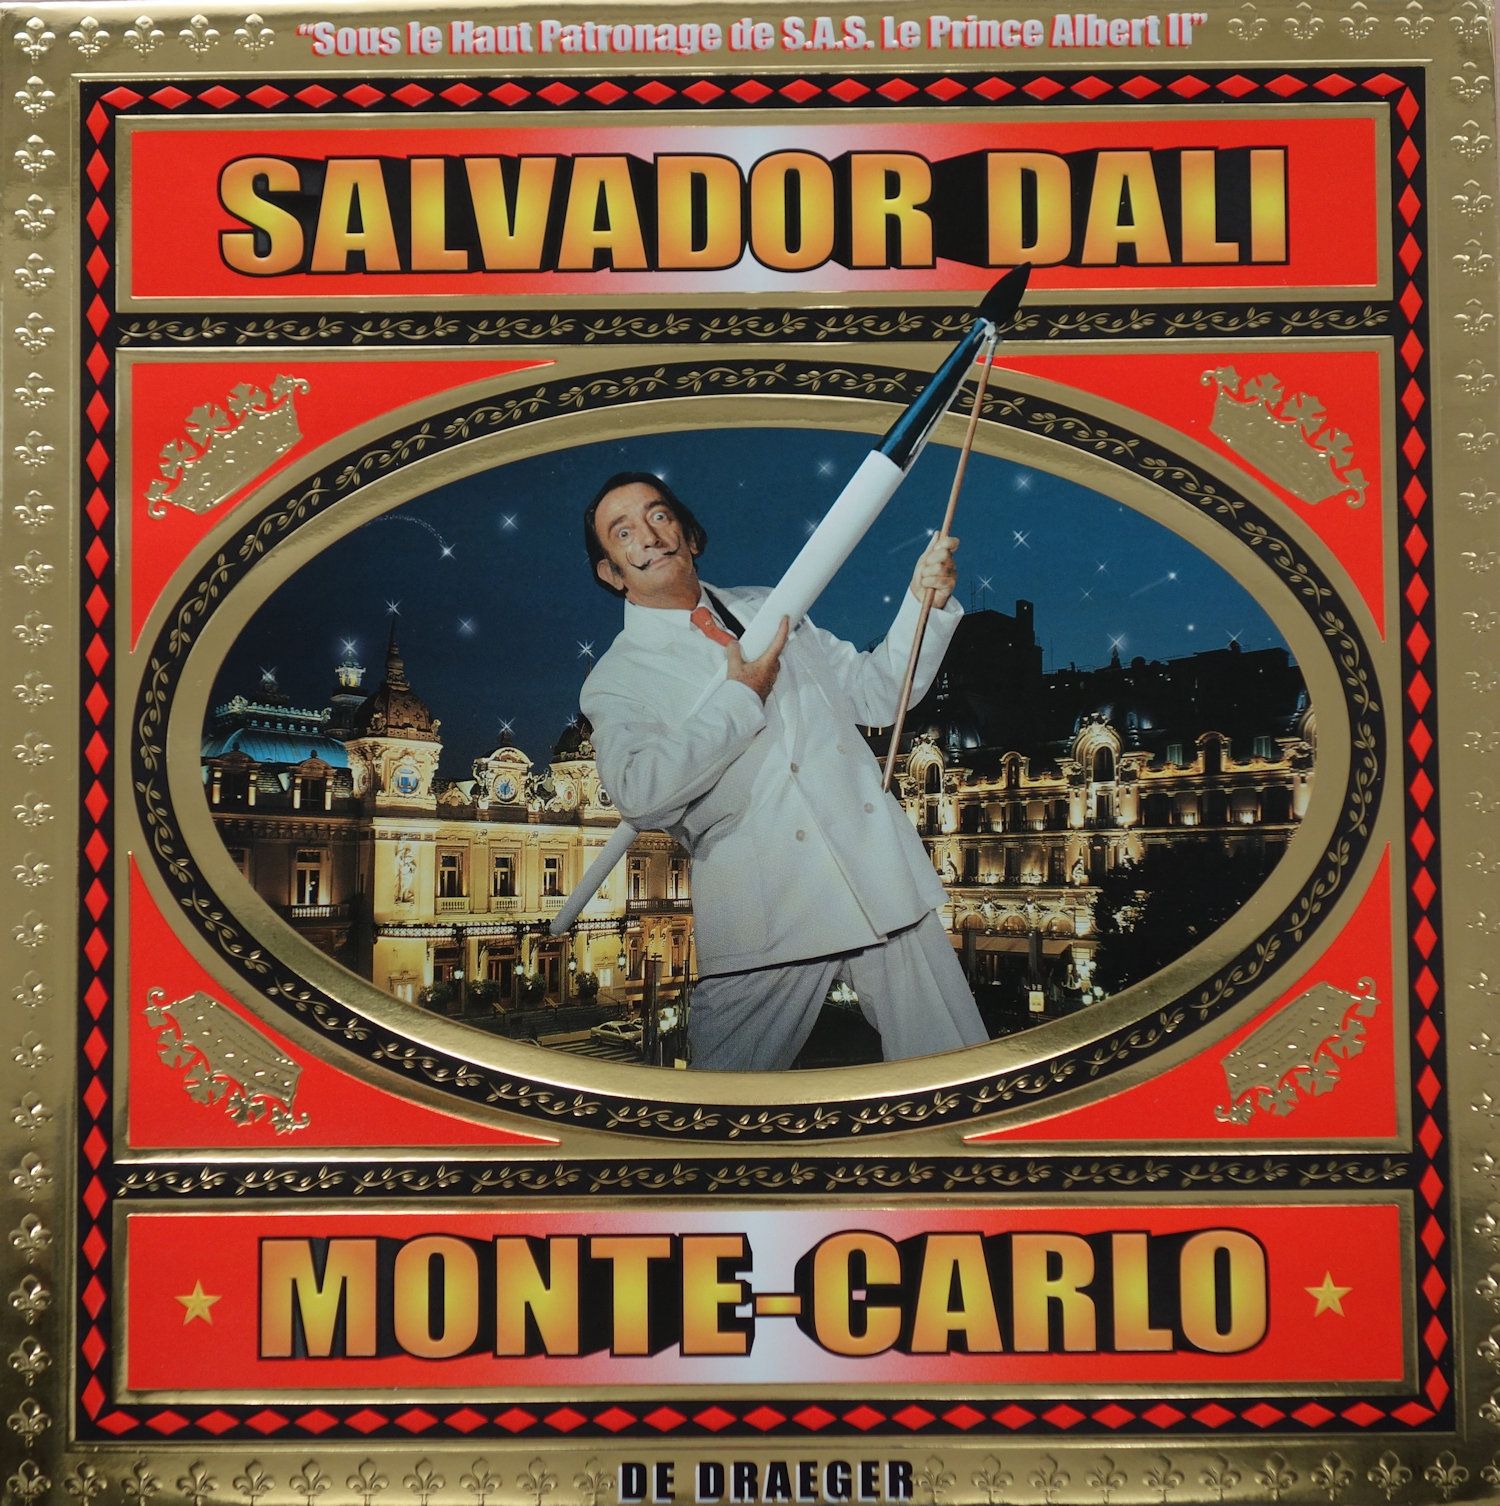 Salvador DALI Salvador Dalí

El álbum / Monte-Carlo de Draeger

Edición Draeger &hellip;